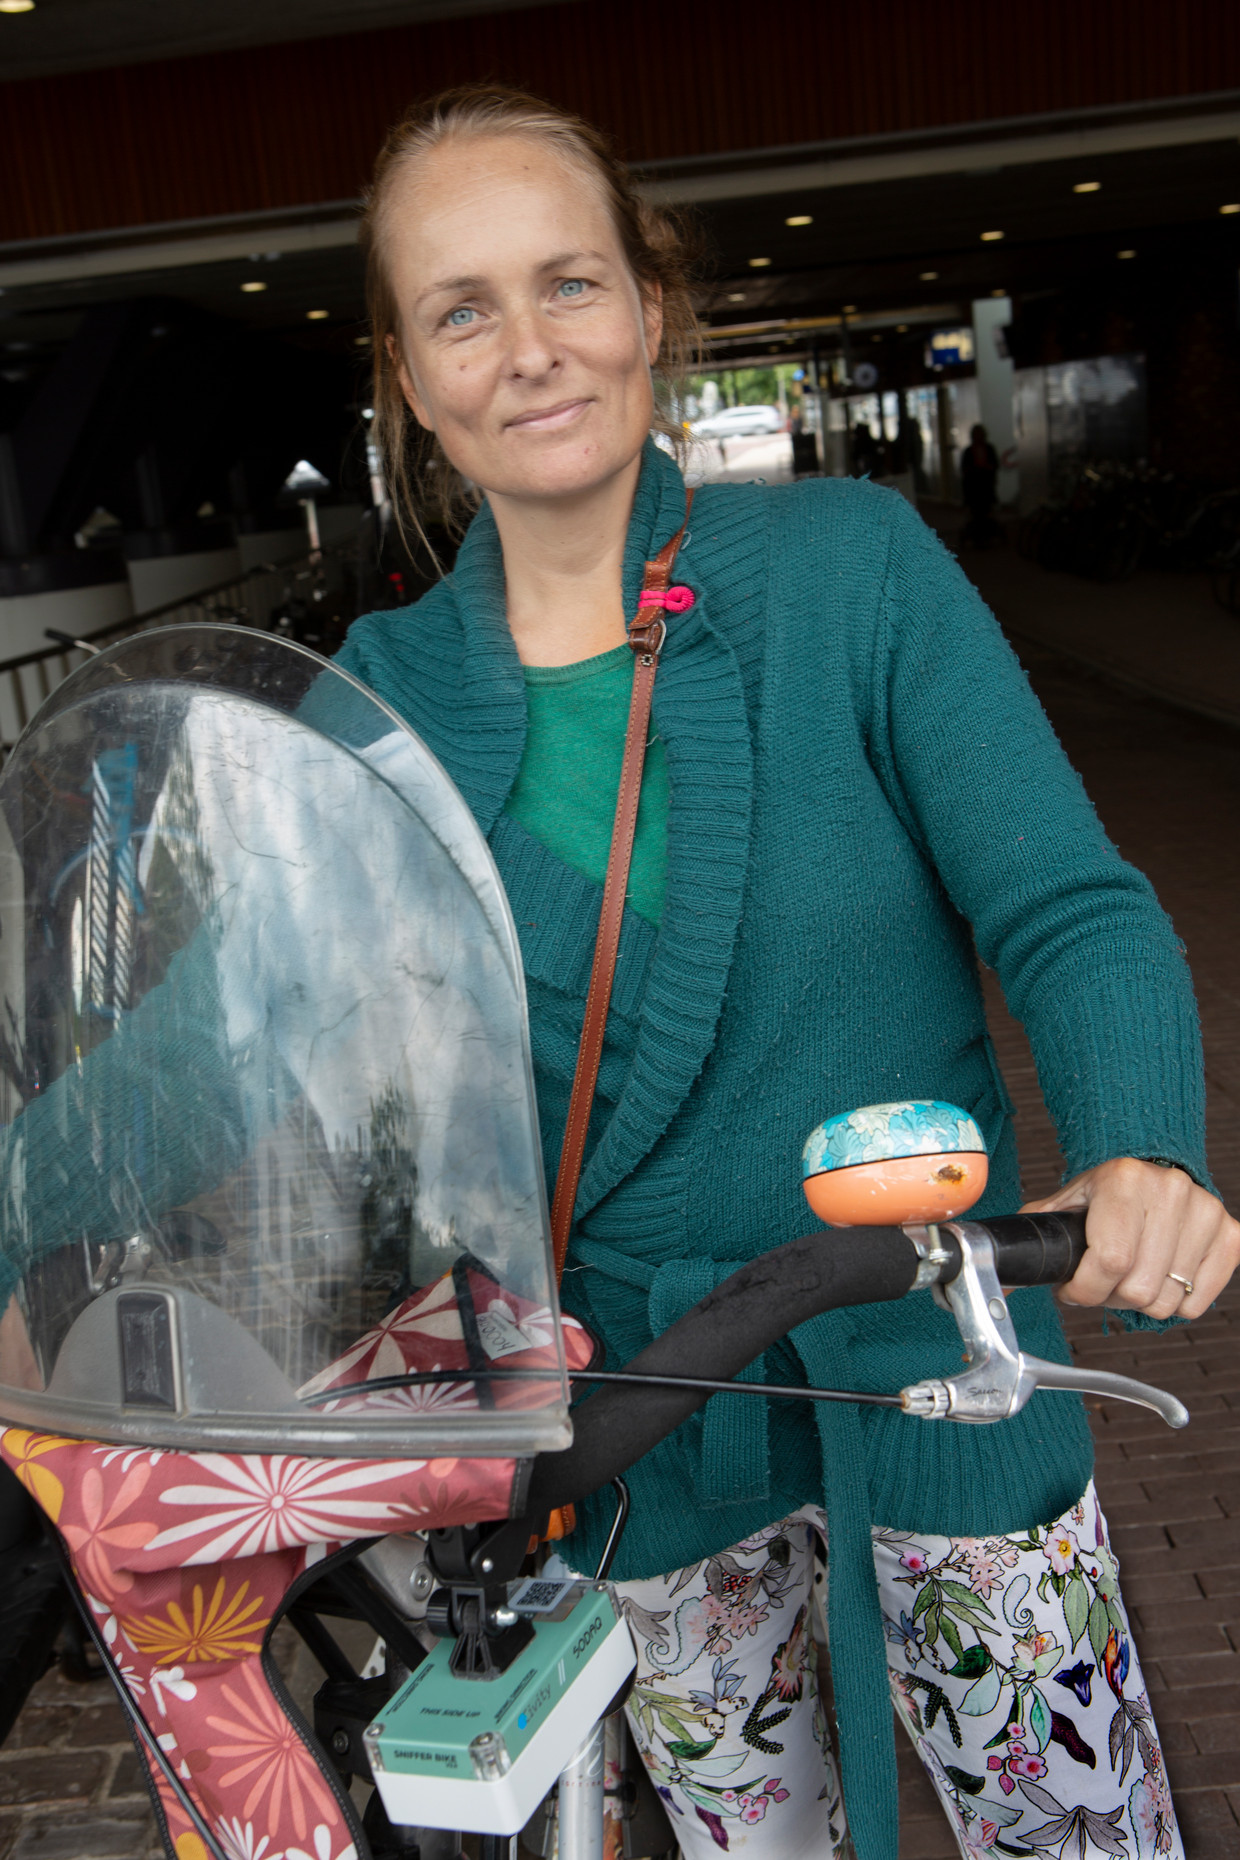 Claar Schouwenaar coördineert voor de provincie Utrecht het project 'Snuffelfiets'. Zelf heeft ze ook een kastje met meetapparatuur aan haar fiets. Beeld Maarten Hartman